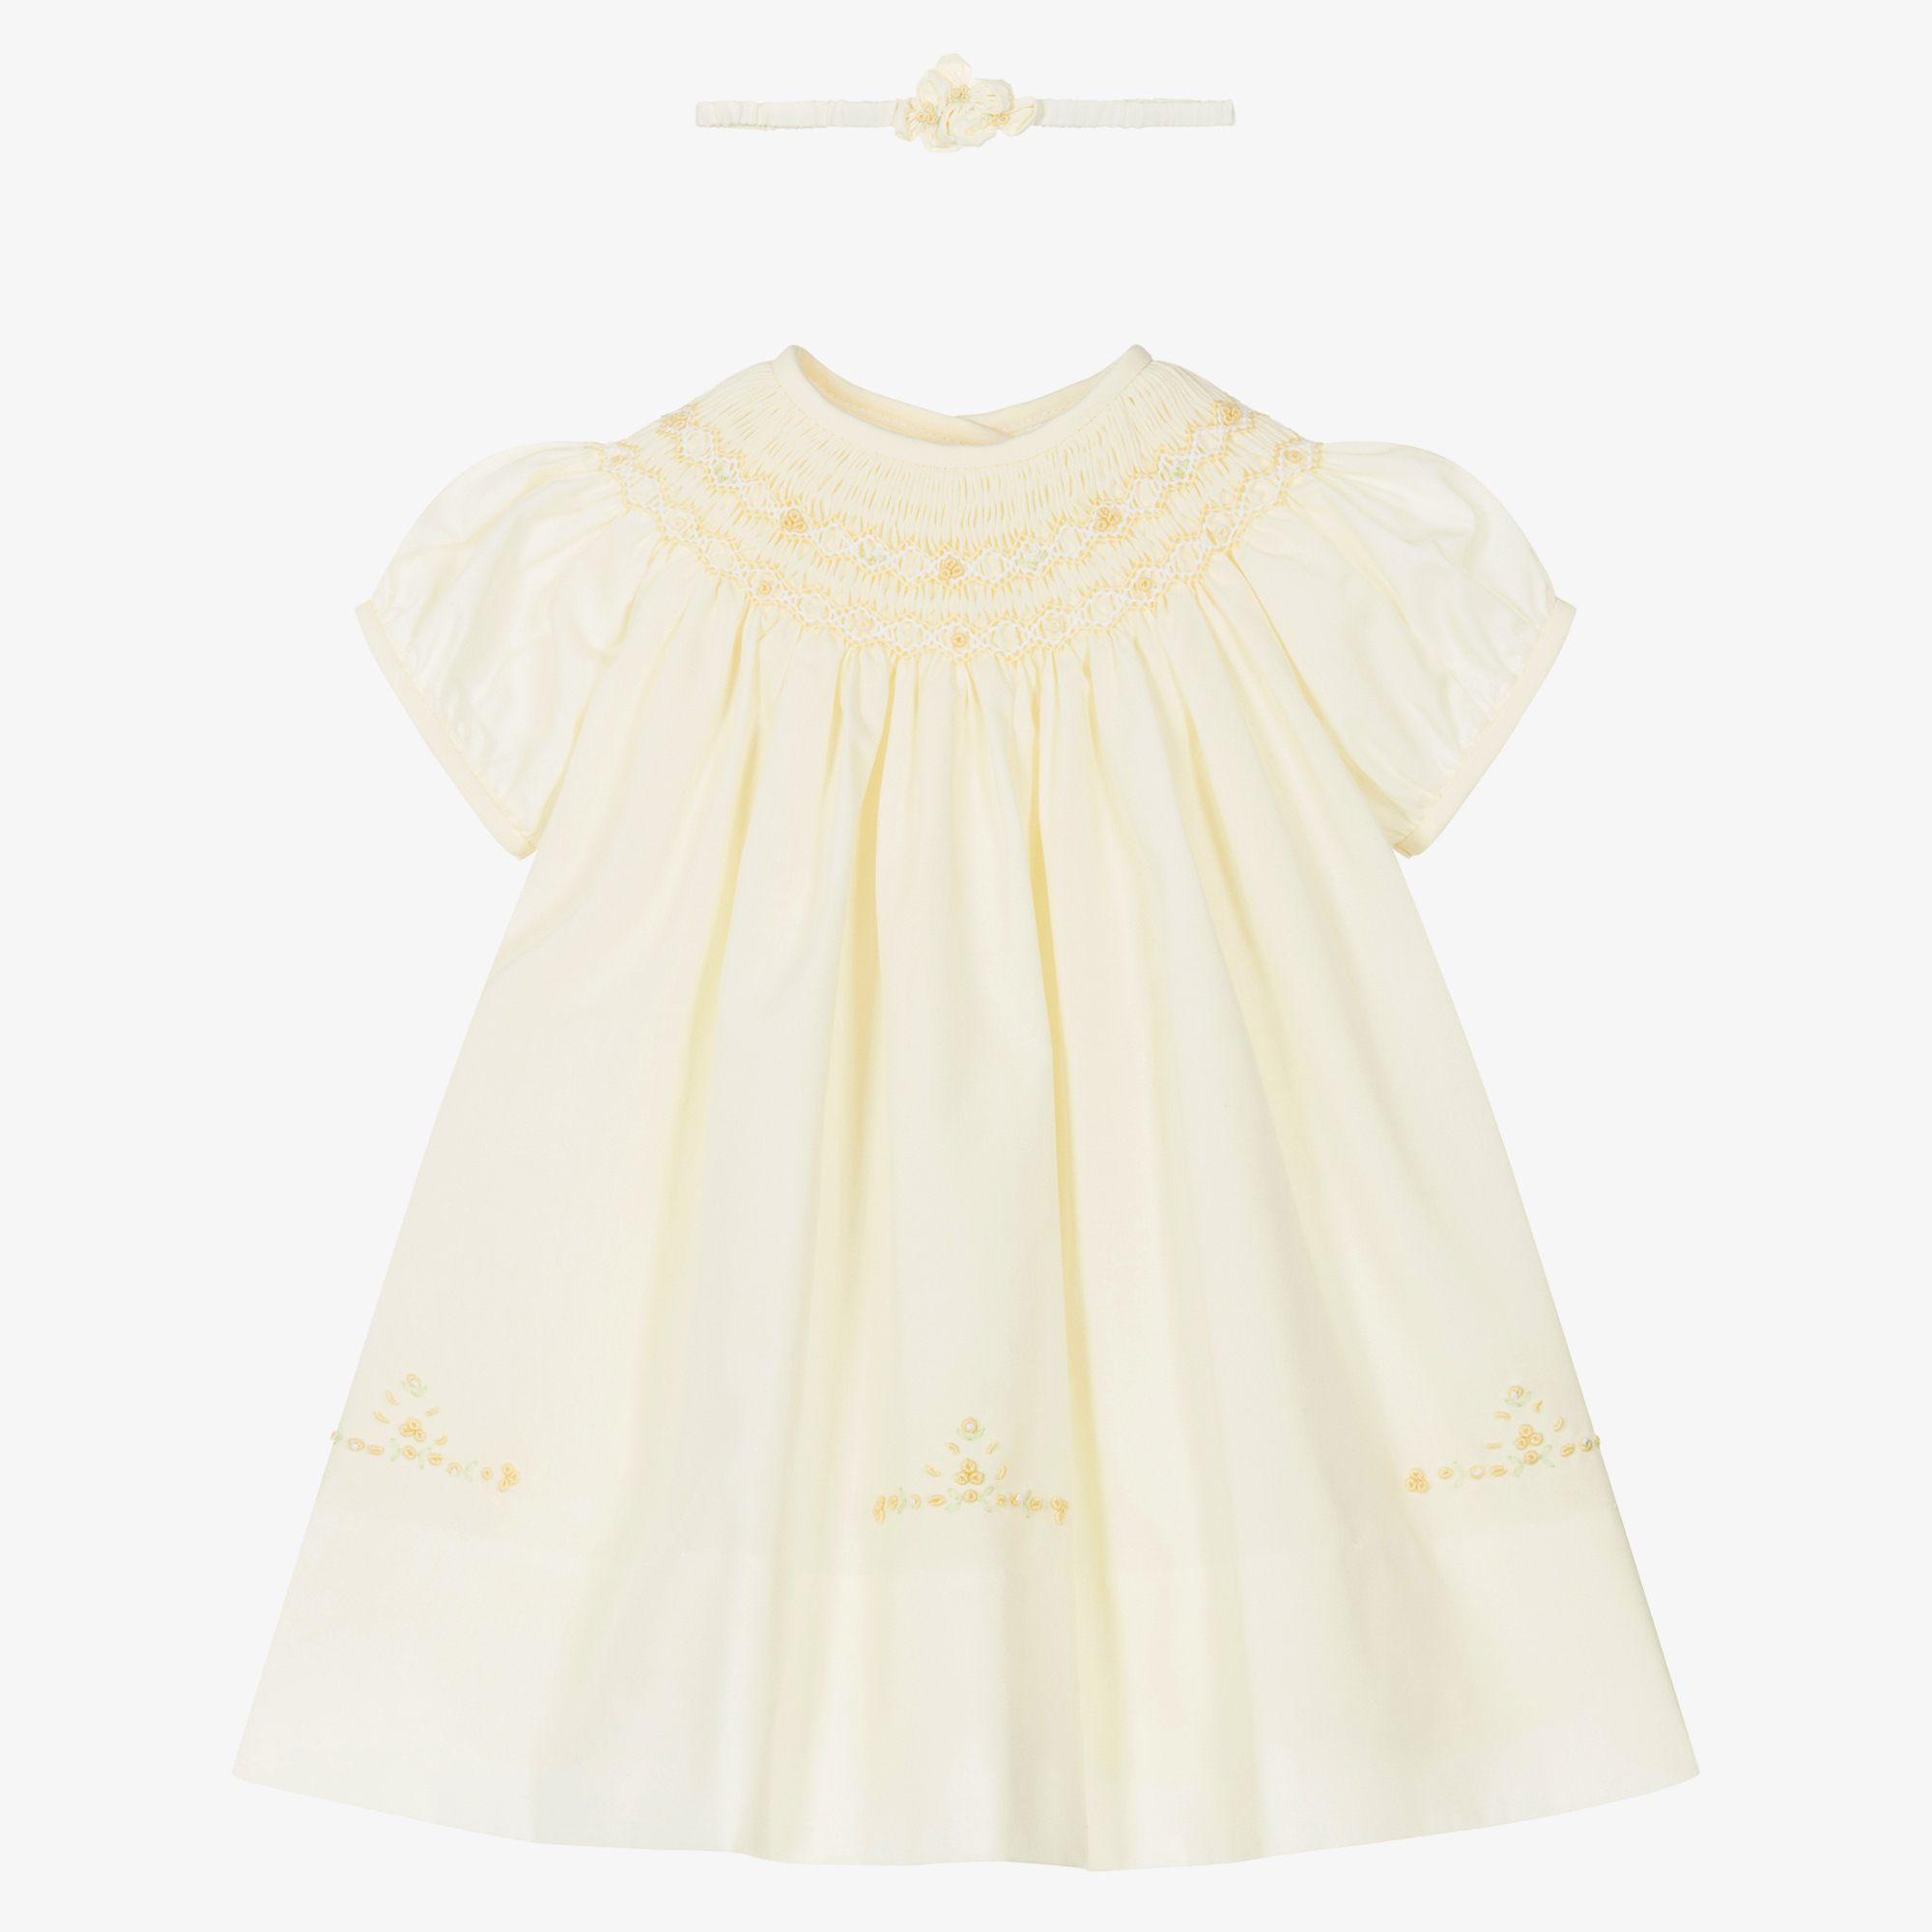 Sarah Louise Baby Girls Yellow Hand-Smocked Cotton Dress Set